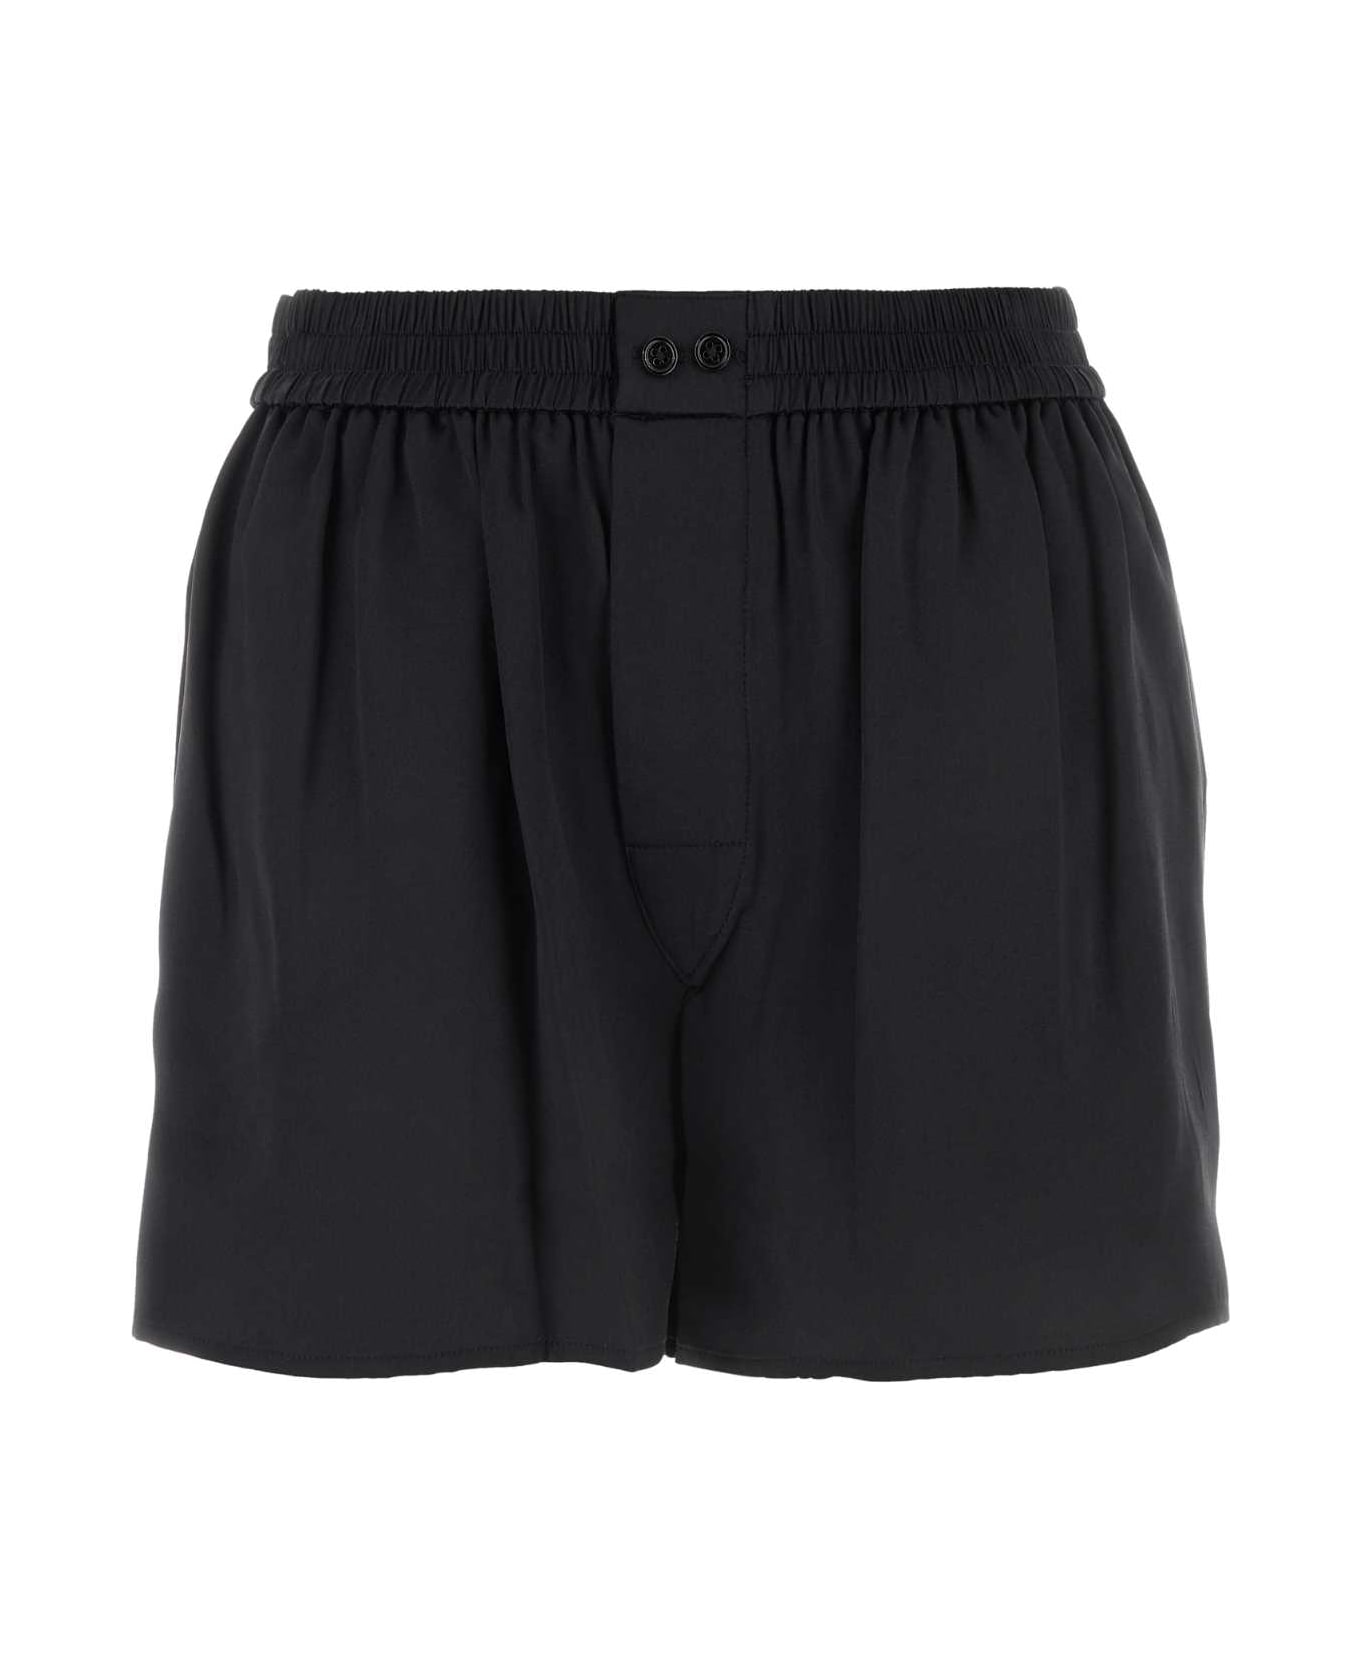 Alexander Wang Black Satin Shorts - Black